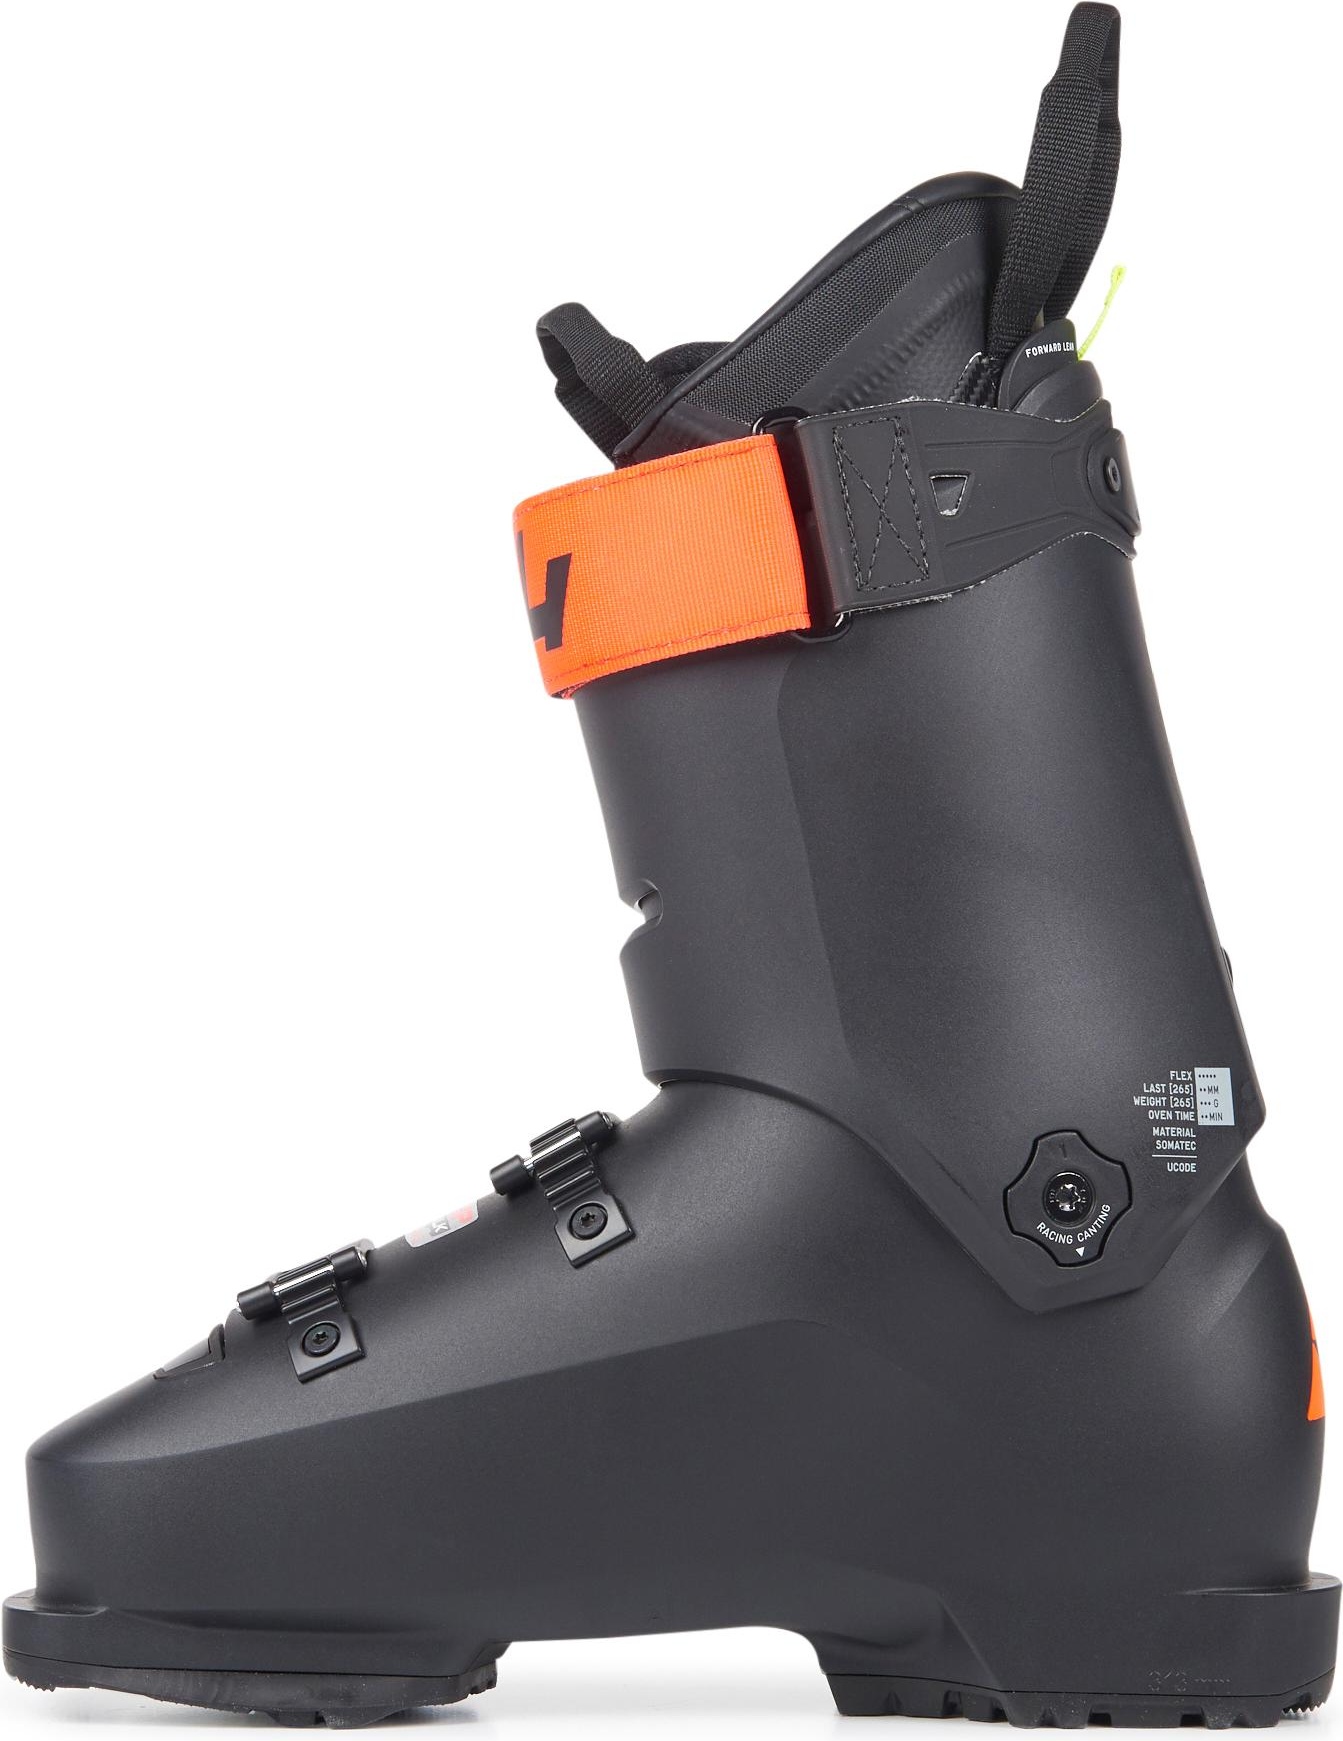 Горнолыжные ботинки Fischer Rc4 The Curv Gt 120 Vacuum Walk 2021, black/black, 27.5